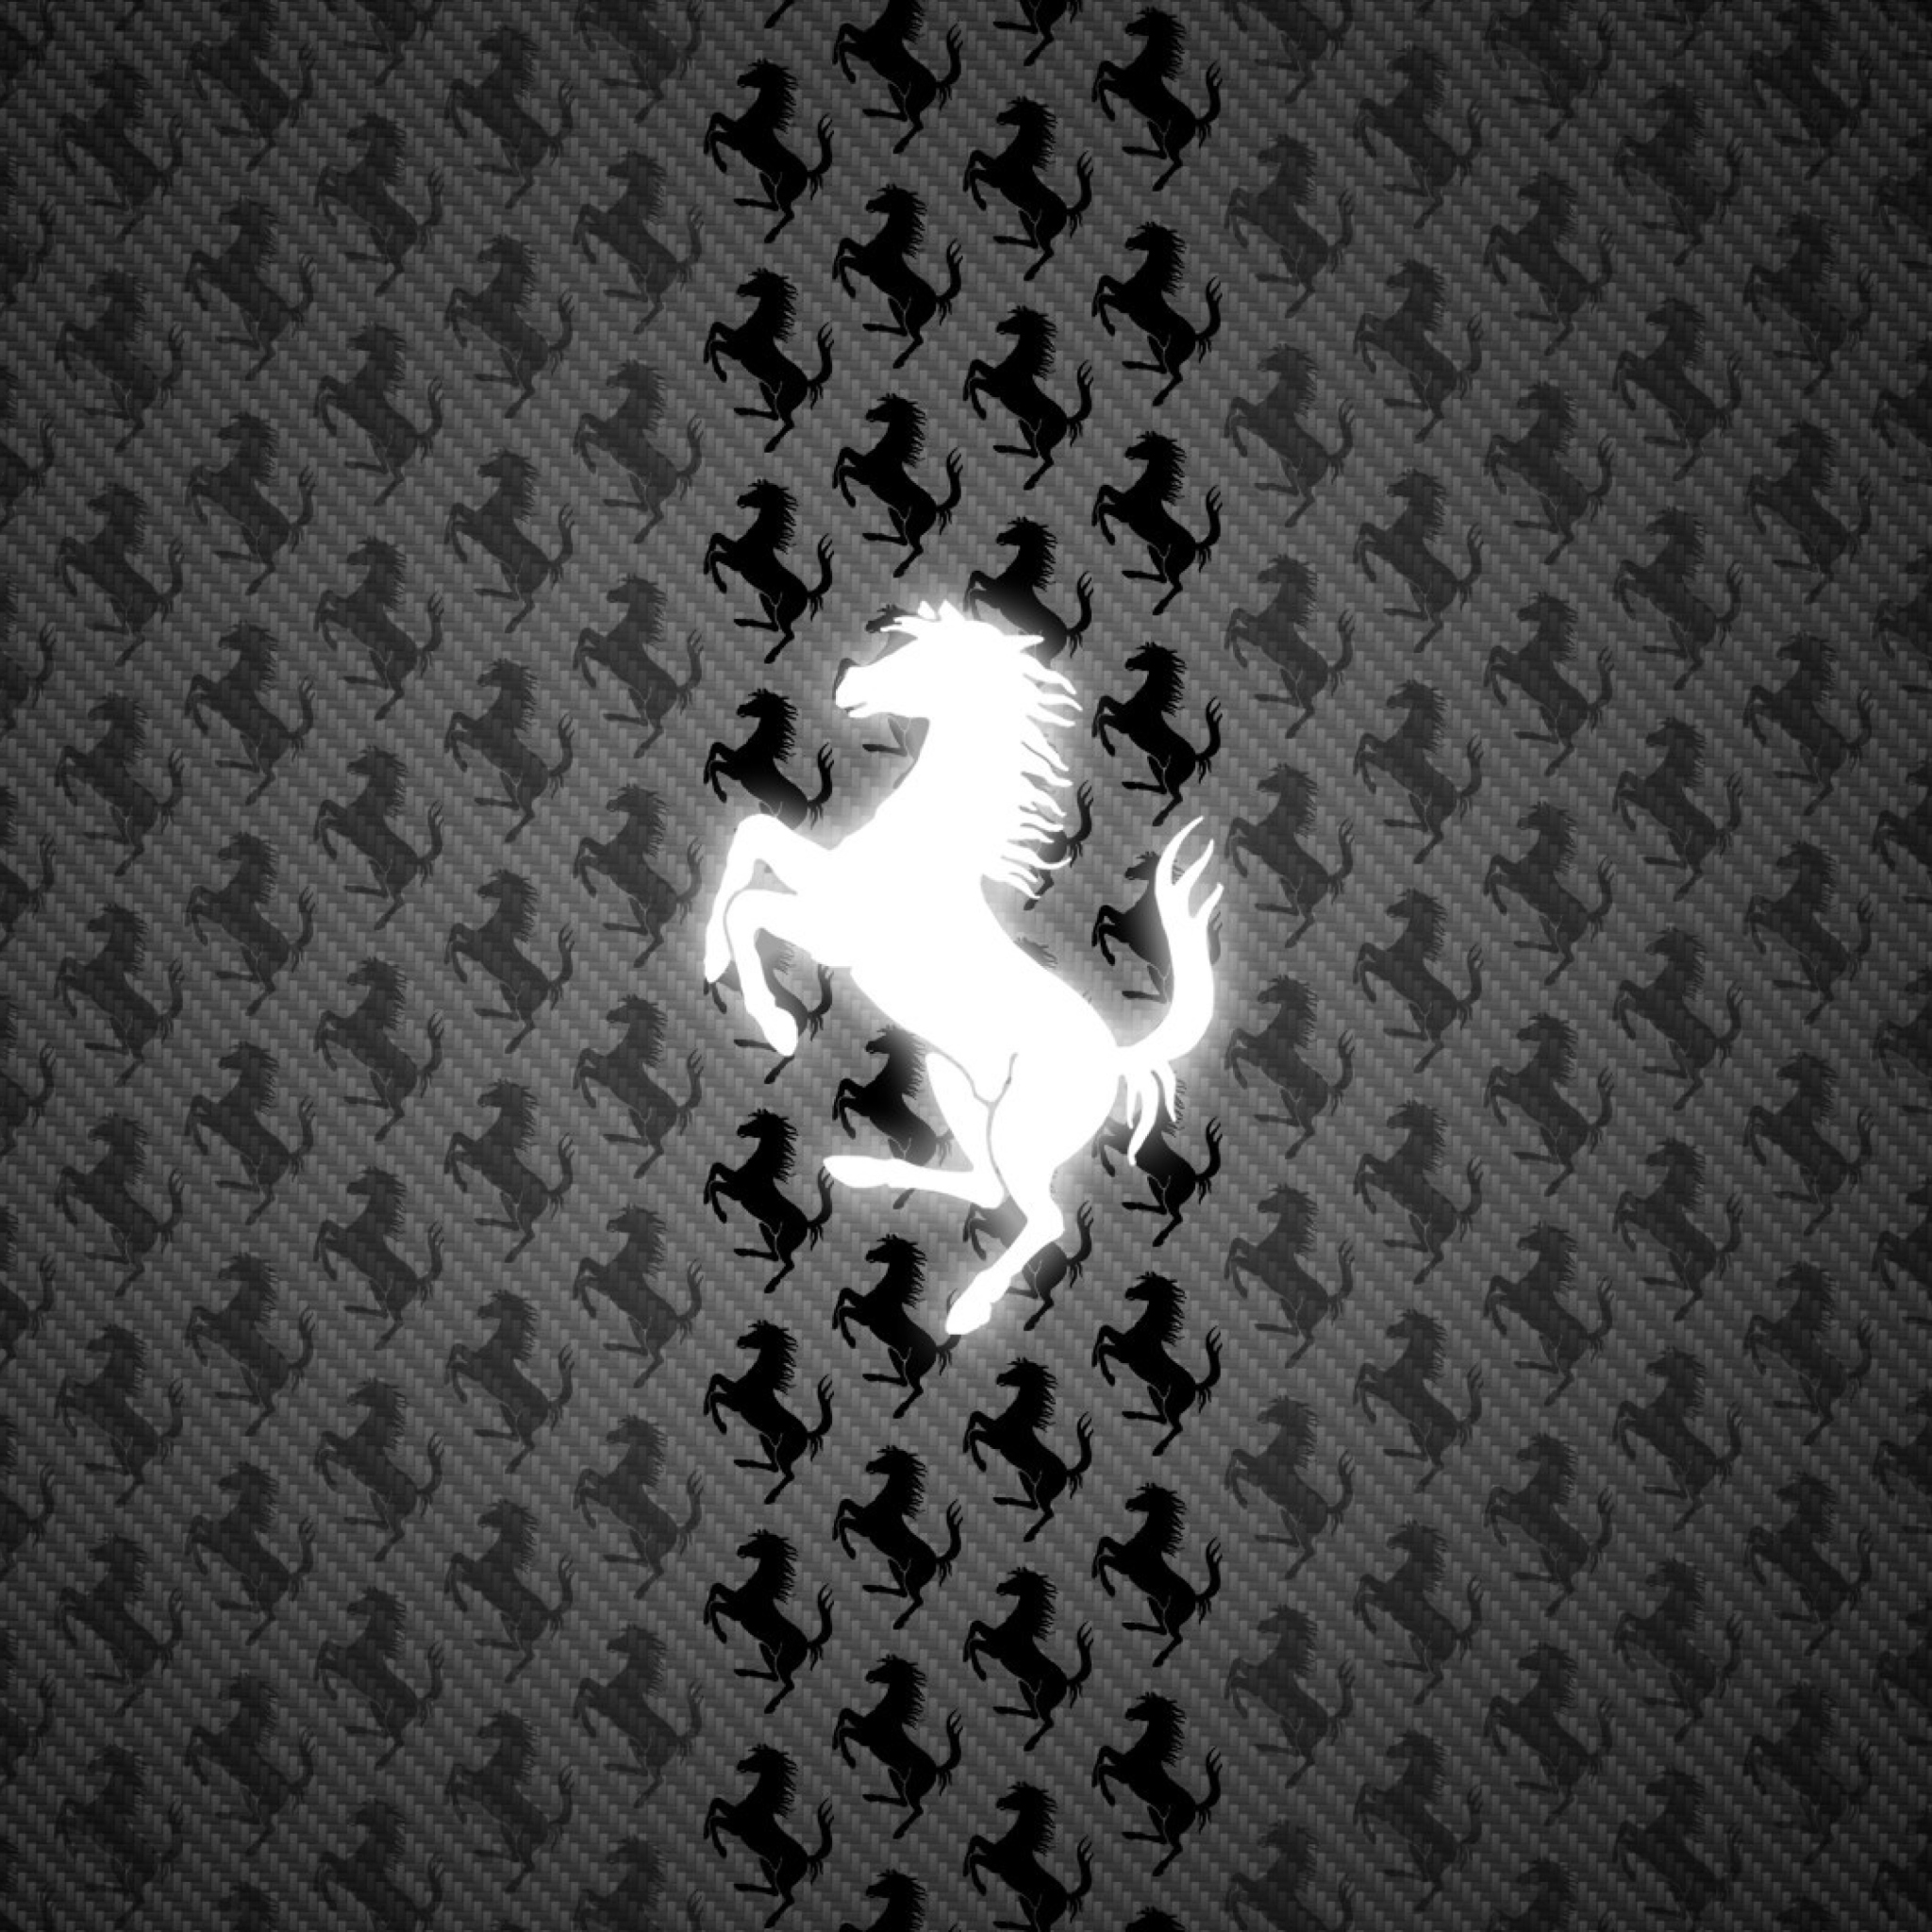 Sfondi Ferrari Logo 2048x2048